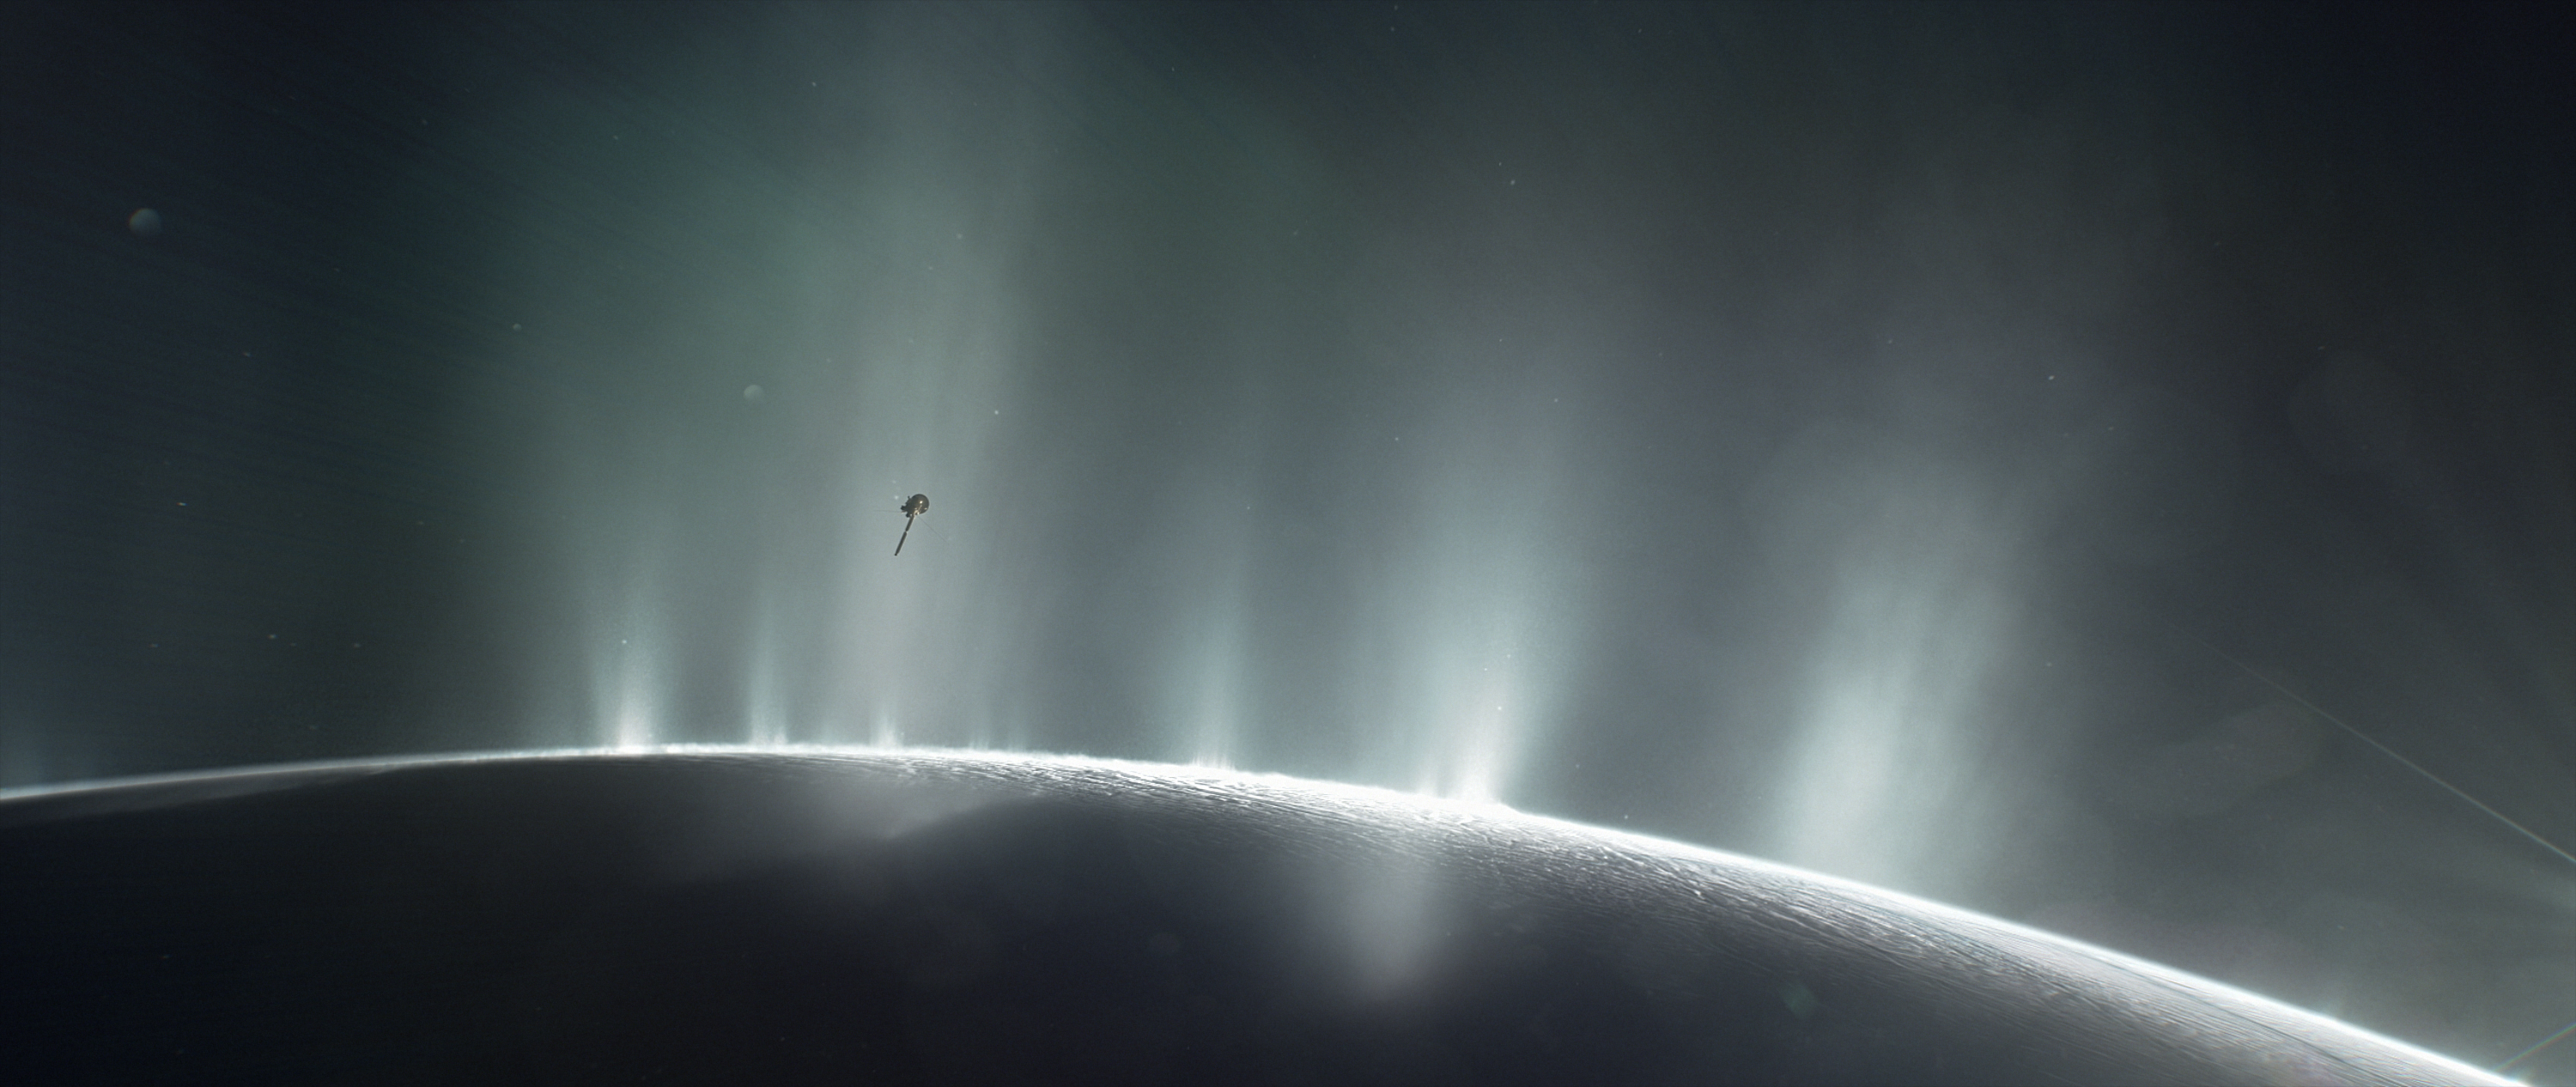 Nem vehetjük biztosra, hogy van élet az Enceladuson, de a feltételek megvannak hozzá